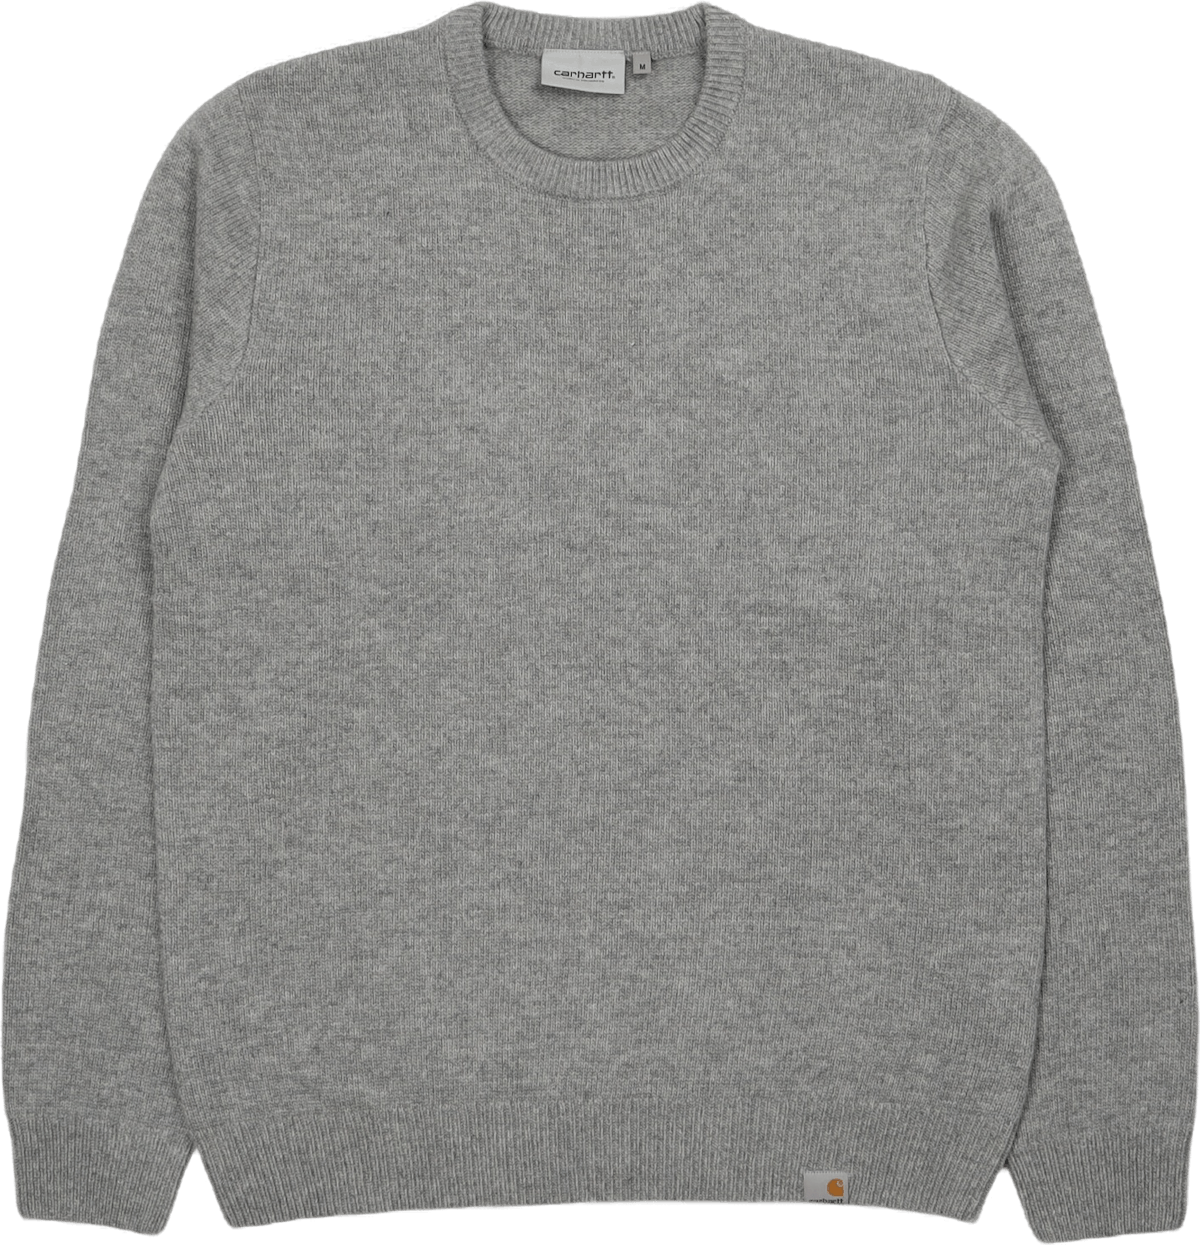 Allen Sweater Grey Heather